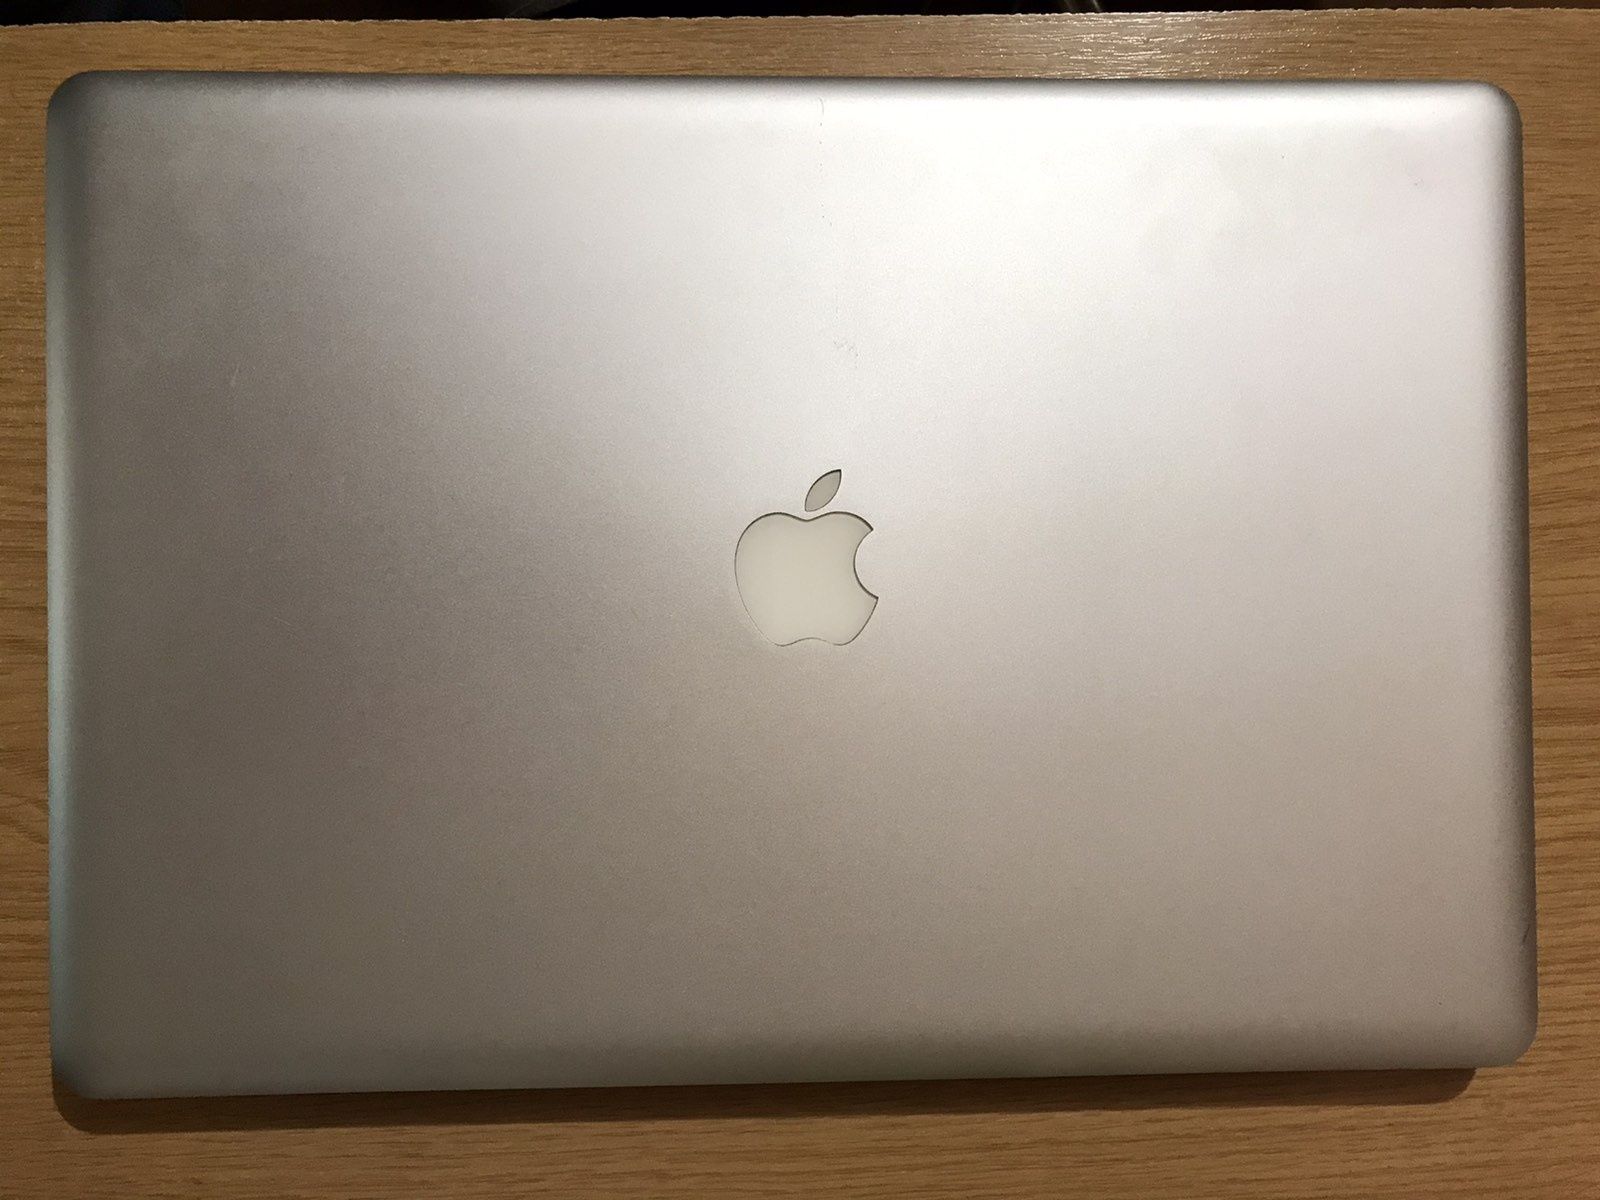 Дисплей крышка в сборе MacBook Pro 17 А1297 (2009-2010)